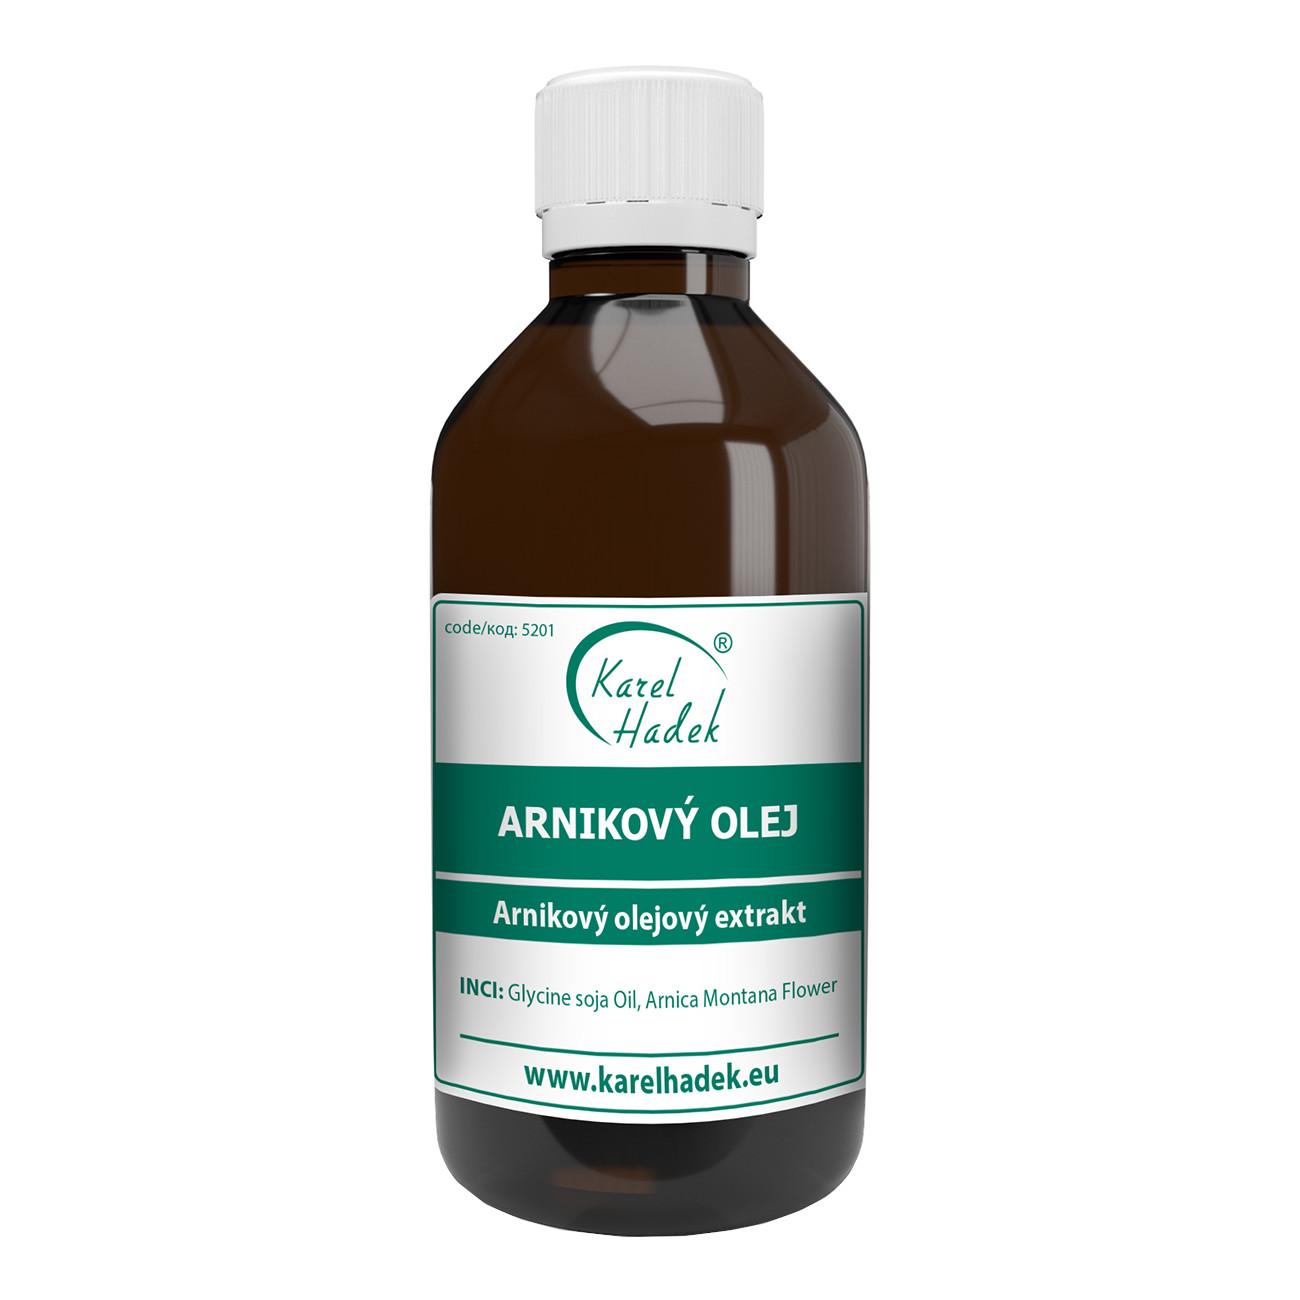 Aromaterapie Karel Hadek Arnikový olej 115 ml